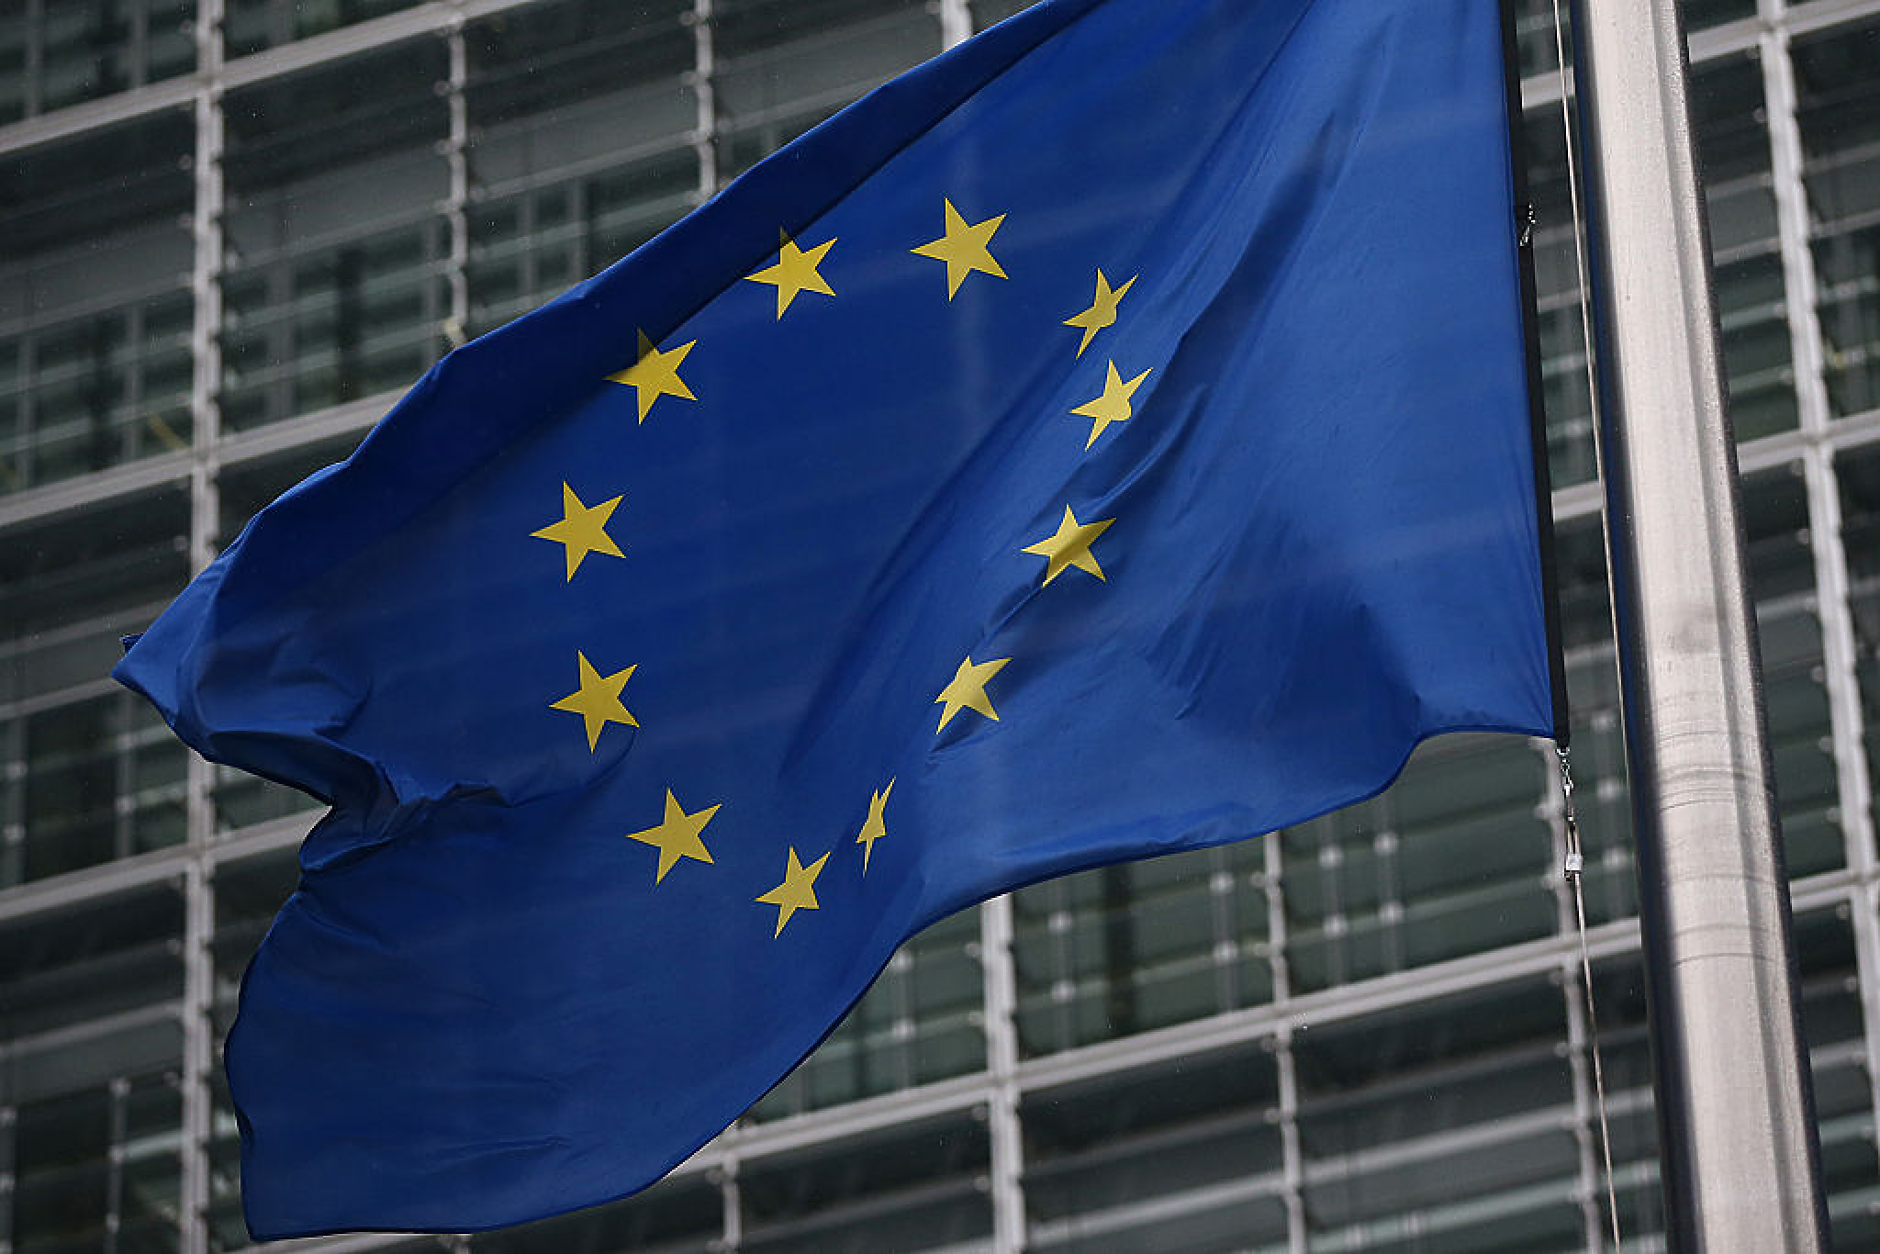 Вътрешните министри от ЕС обсъждат Шенген, но гласуване не се очаква